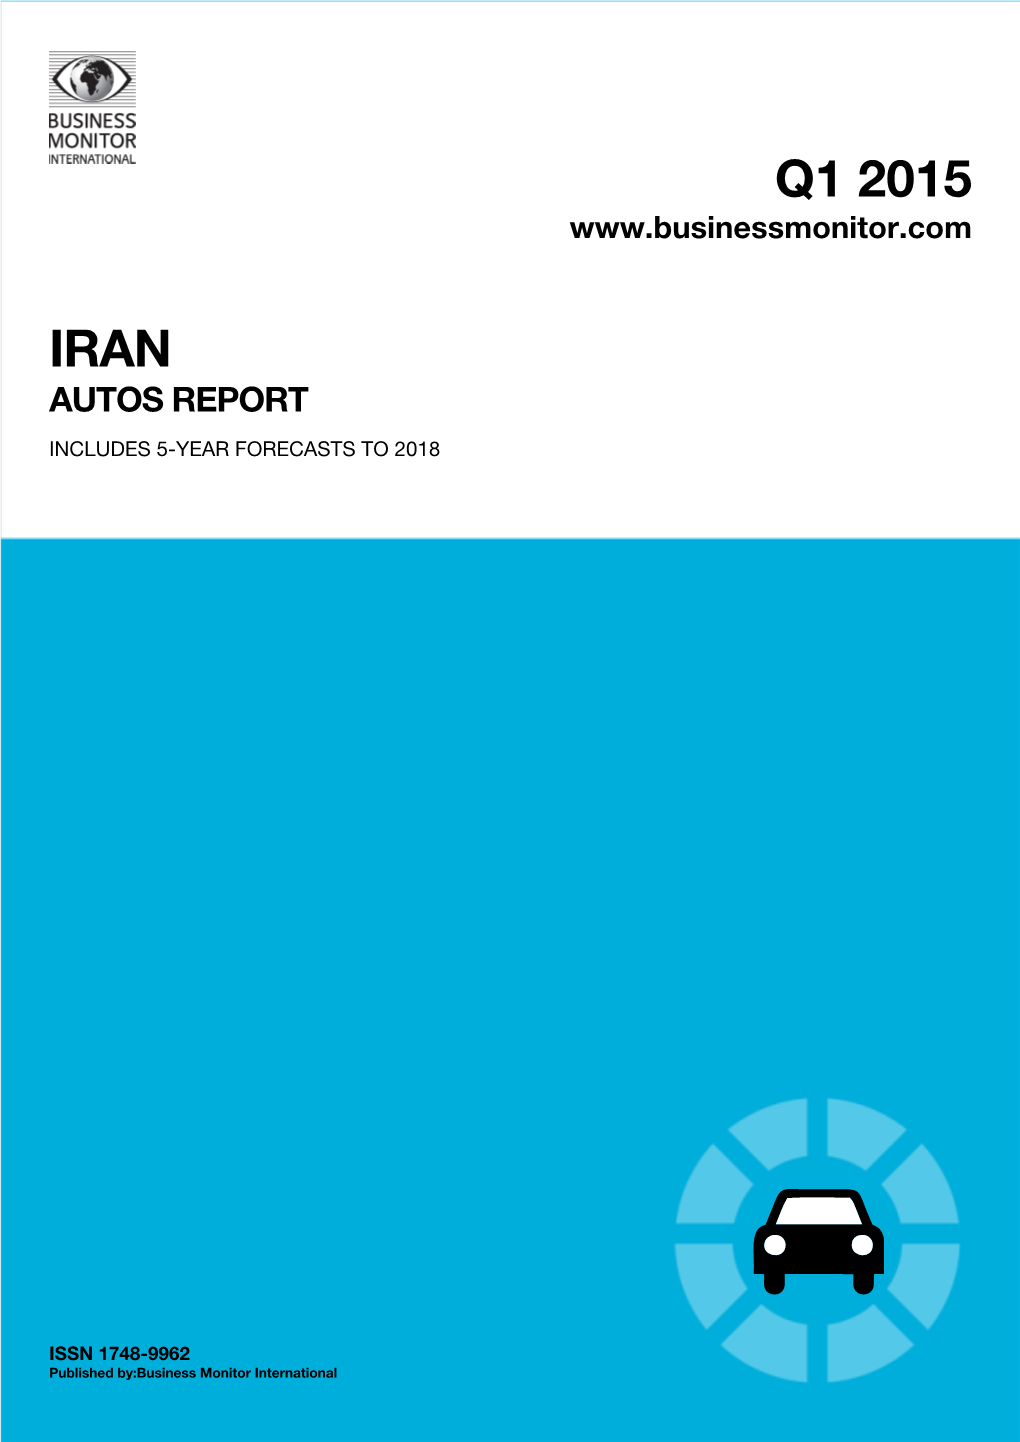 Q1 2015 Iran